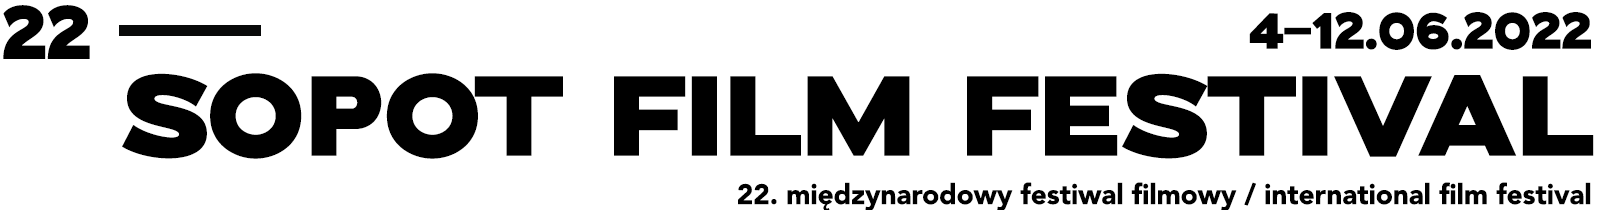 22. Sopot Film Festival-Koncert Muzyki Filmowej + Międzynarodowy Festival Filmowy / International Film Festival / 4-12.06.2022